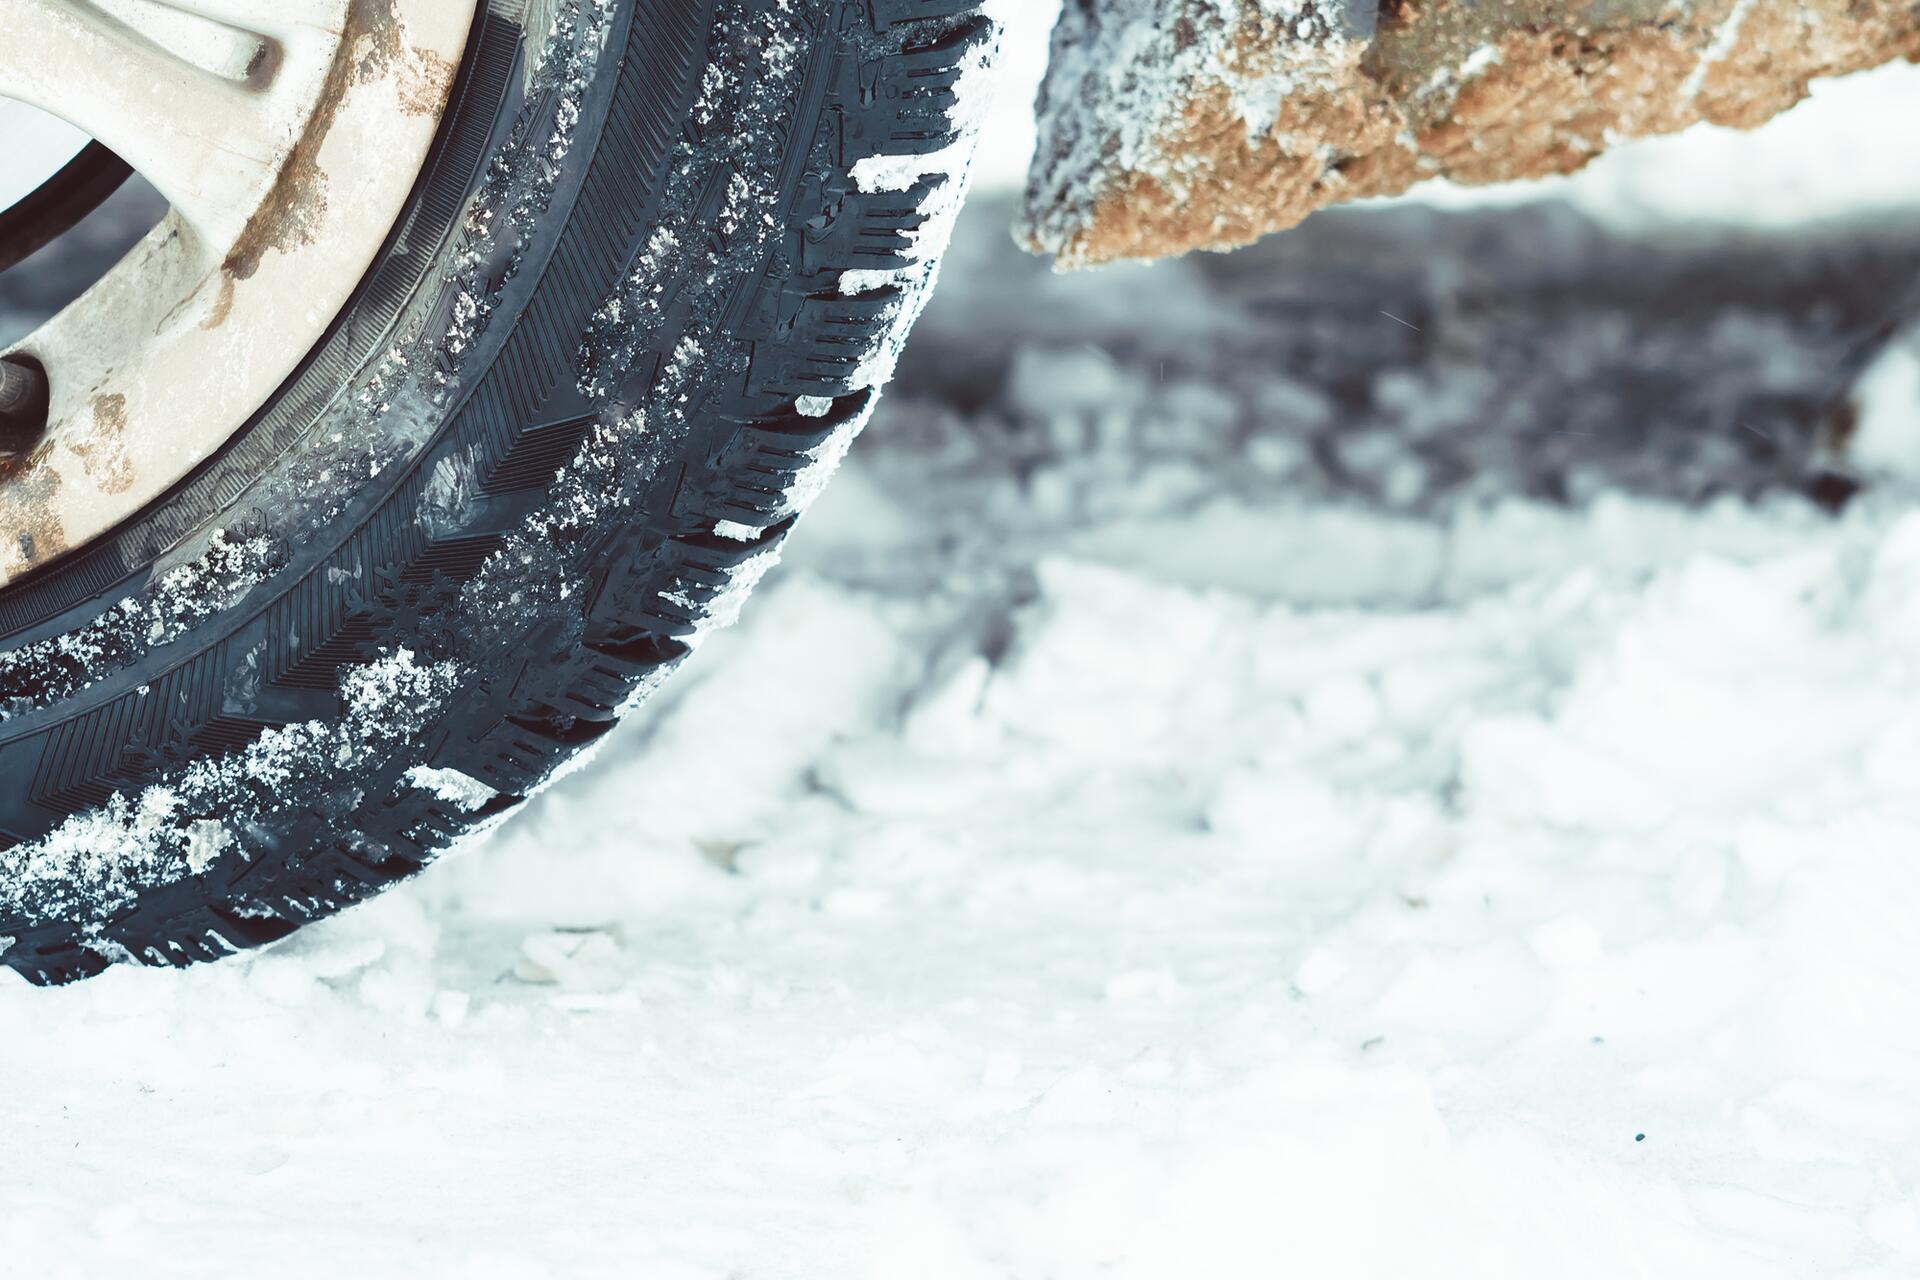 Jak vybrat zimní pneumatiky